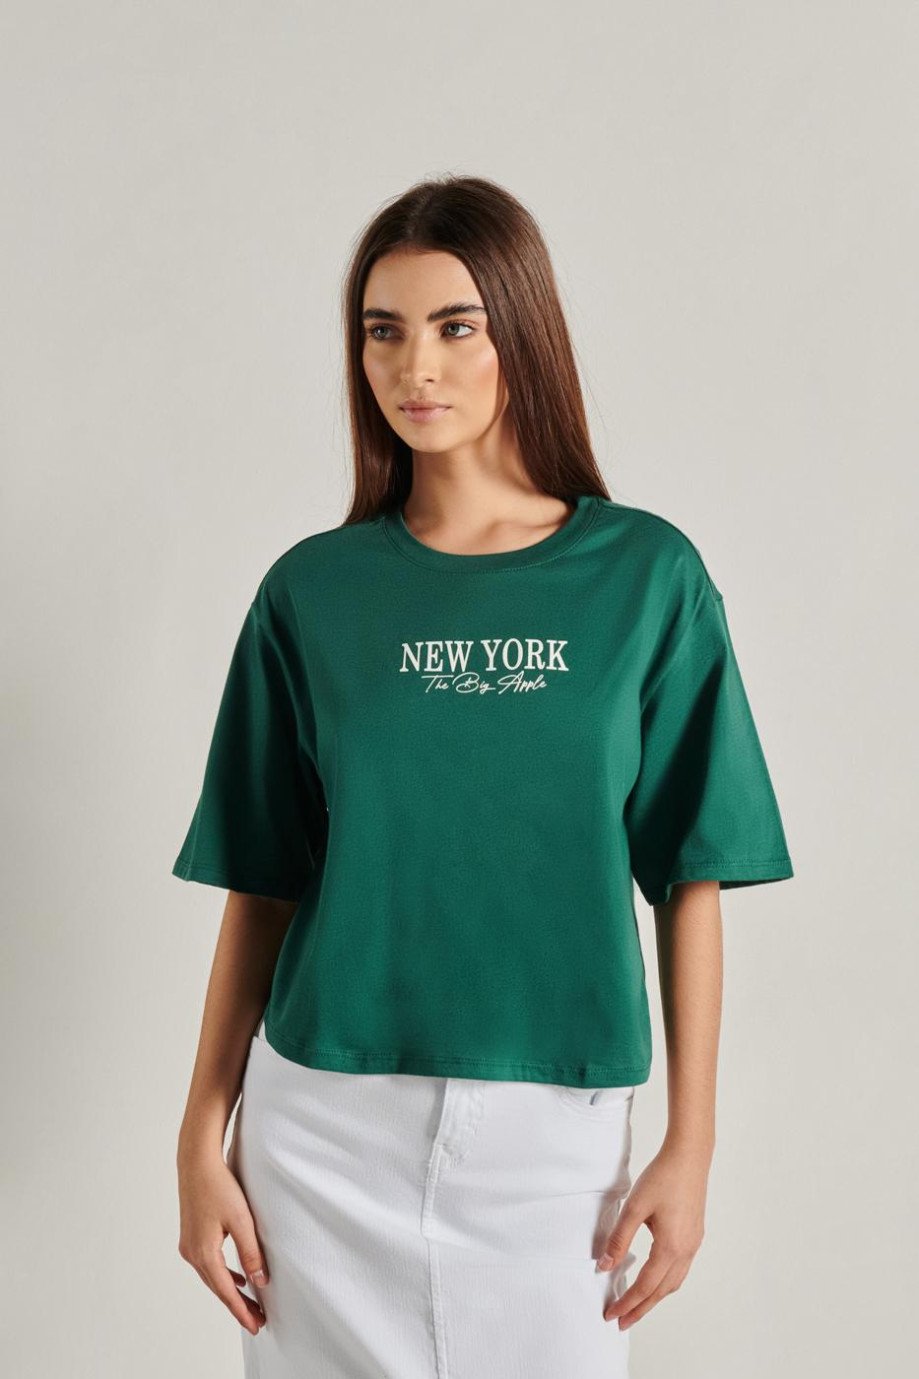 Camiseta oversize unicolor crop top con diseño college en frente